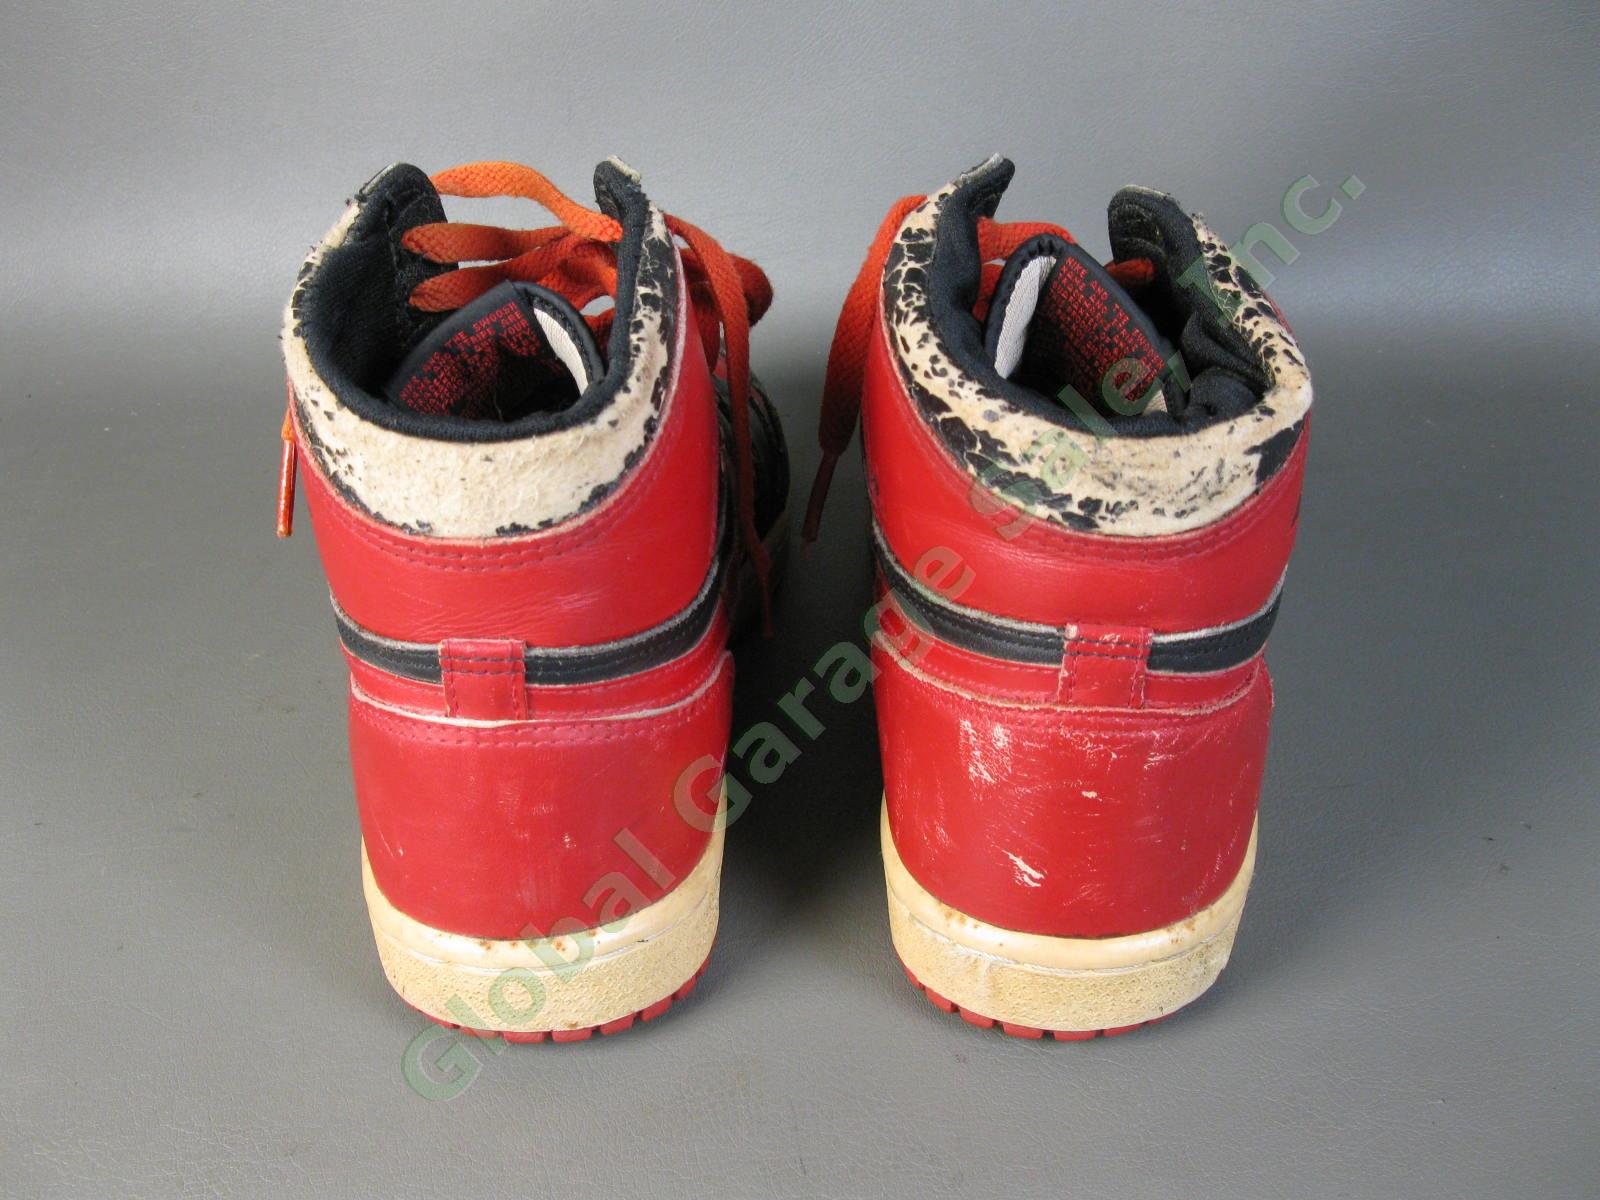 ORIGINAL 1985 Nike Air Jordan 1 Bred Black Red Chicago Bulls BANNED OG MJ AJI NR 3